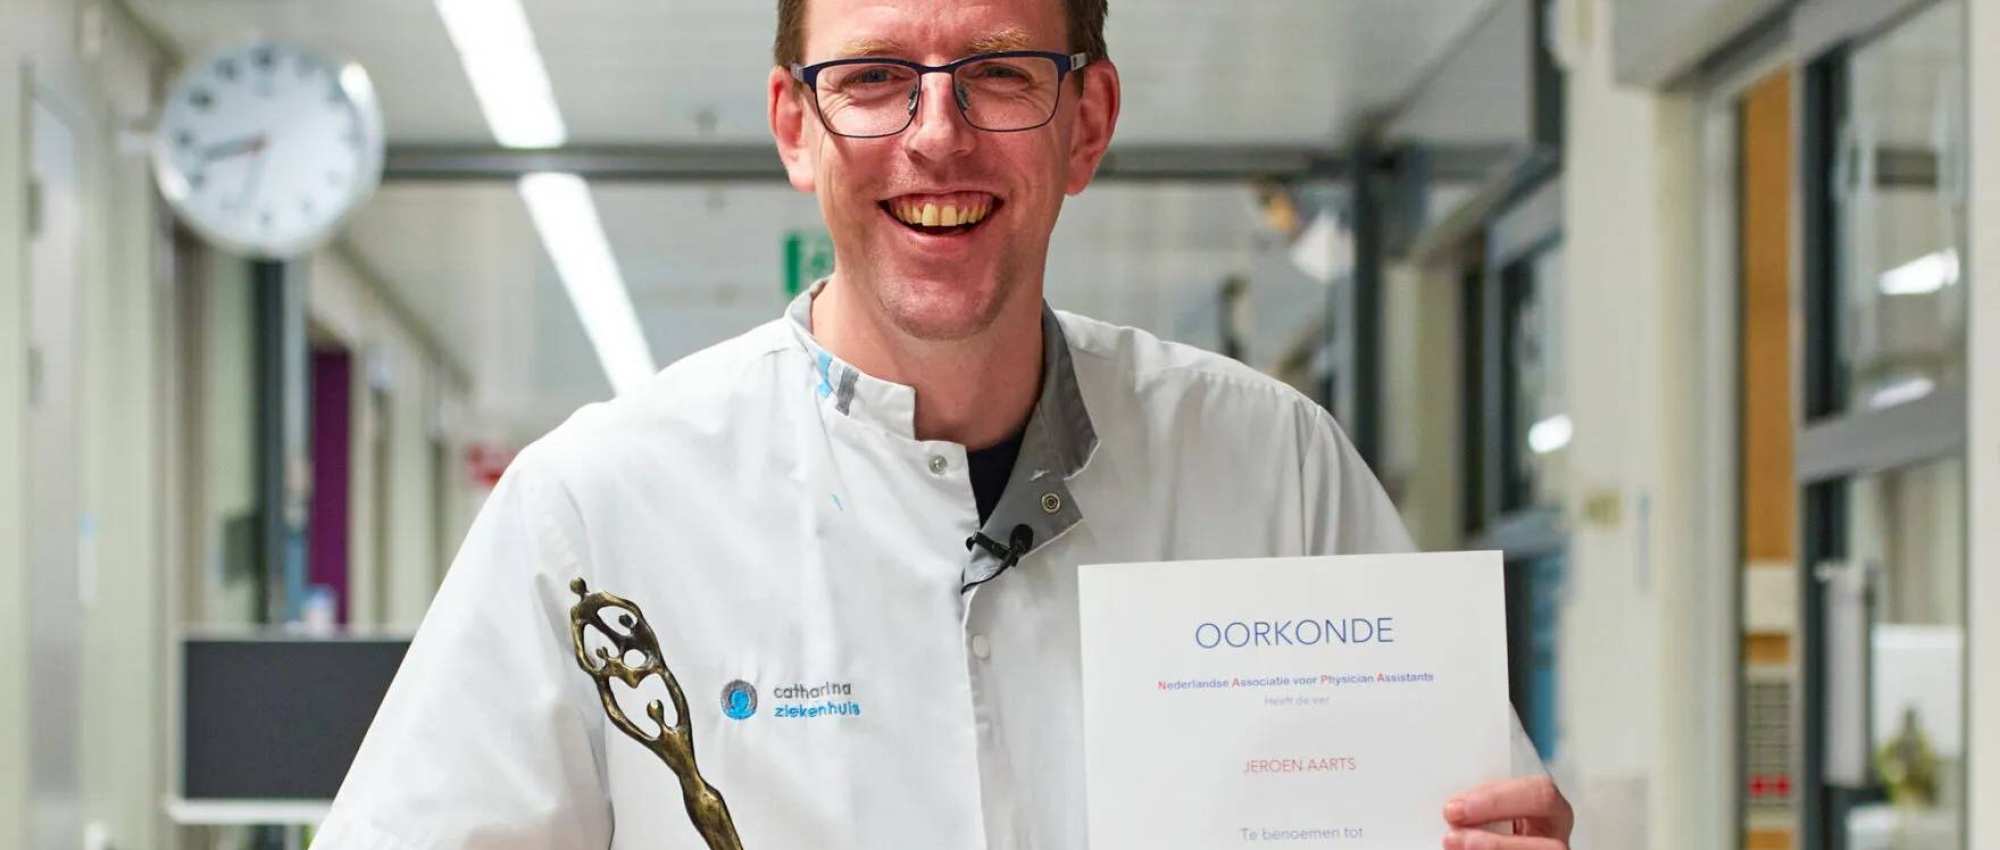 Foto van Jeroen Aarts, verkozen tot PA van het jaar 2022, in doktersjas met oorkonde en beeldje in het Catharinaziekenhuis